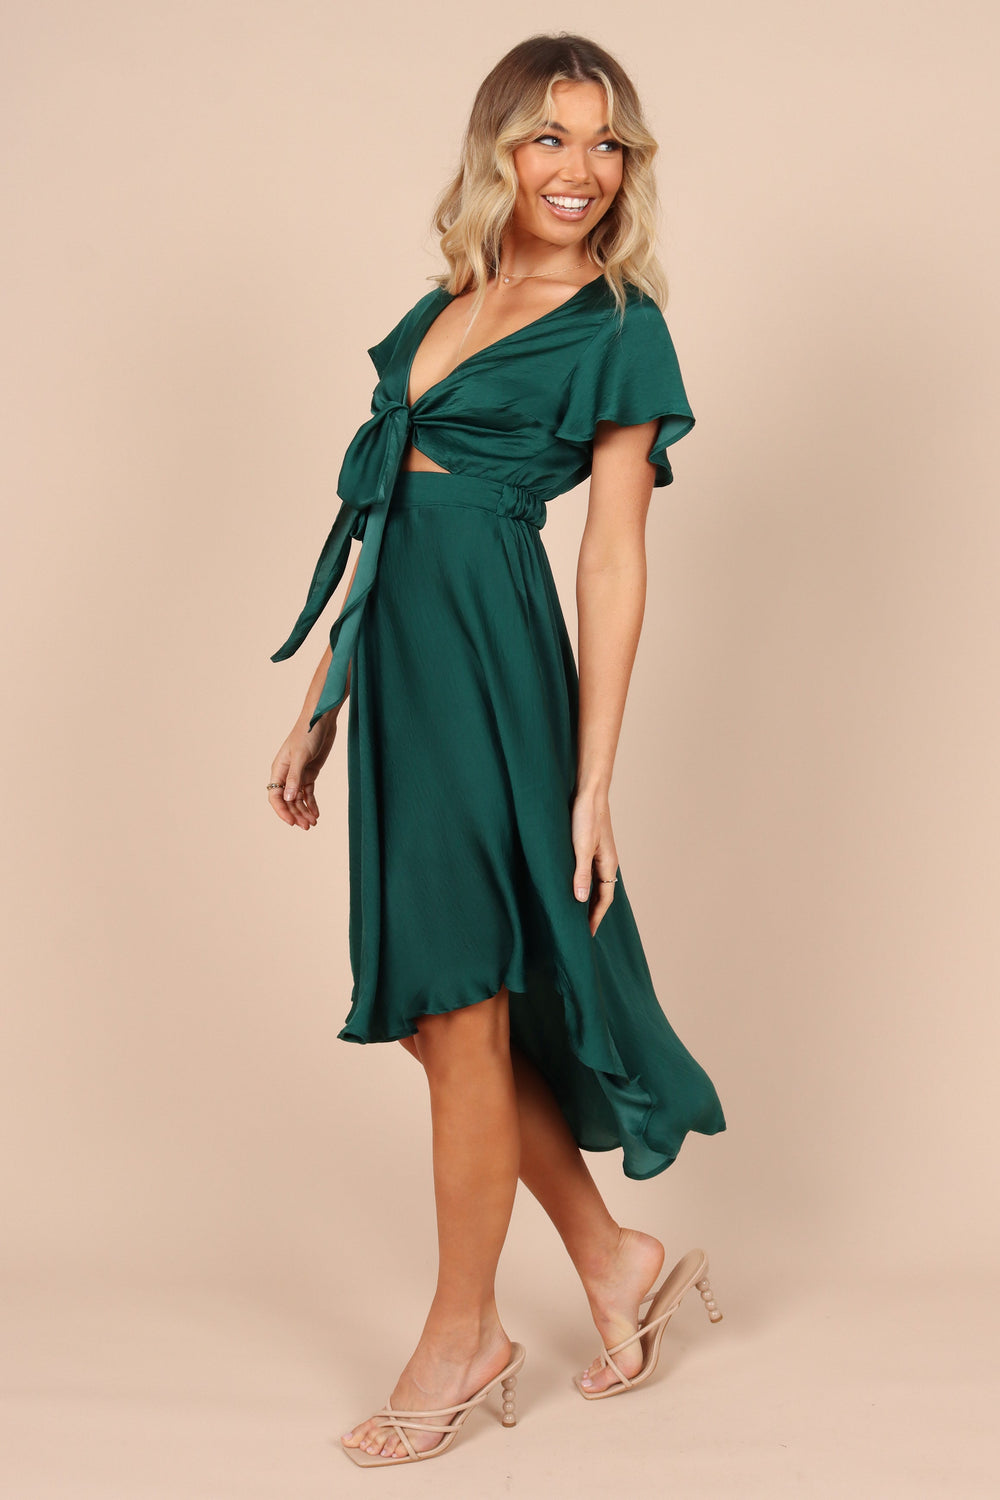 Petal and Pup USA DRESSES Amanda Hi Lo Tie Front Dress - Emerald